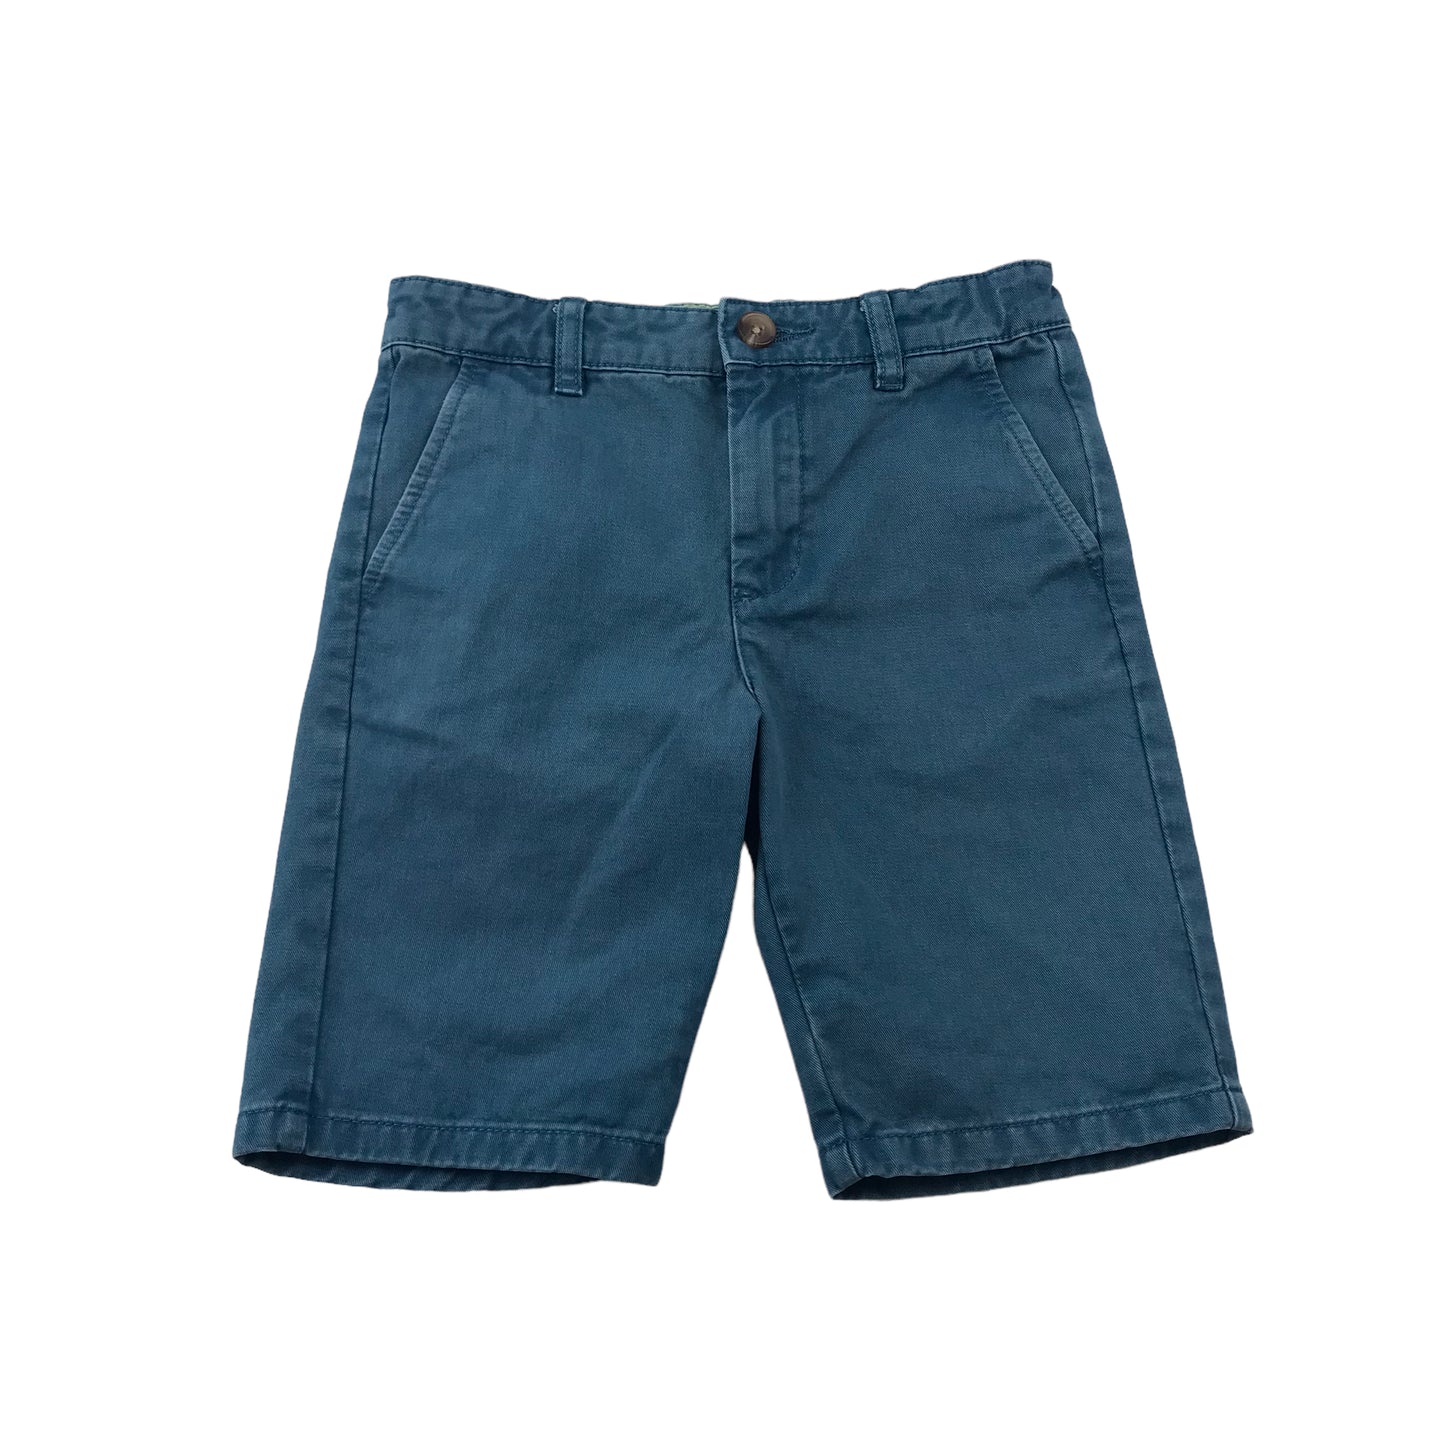 M&S Turquoise Blue Denim Style Shorts Age 6